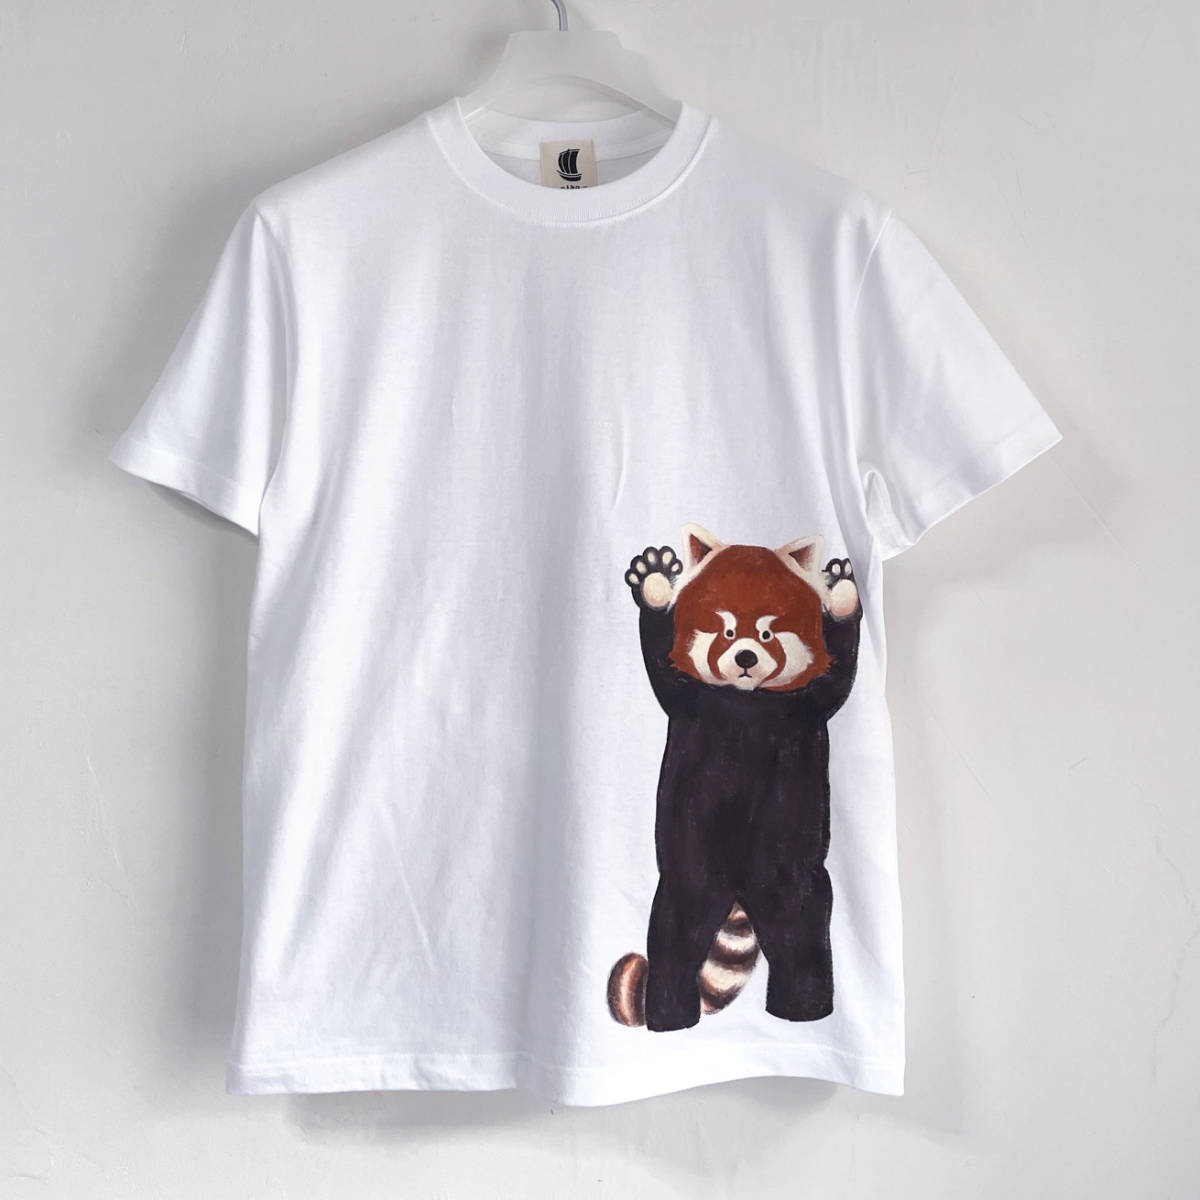 남자 티셔츠 XL 사이즈 흰색 덜 빵 패턴 티셔츠 흰색 수제 손으로 그린 티셔츠 동물, XL 사이즈 이상, 목이 둥글게 파인 옷, 무늬가 있는